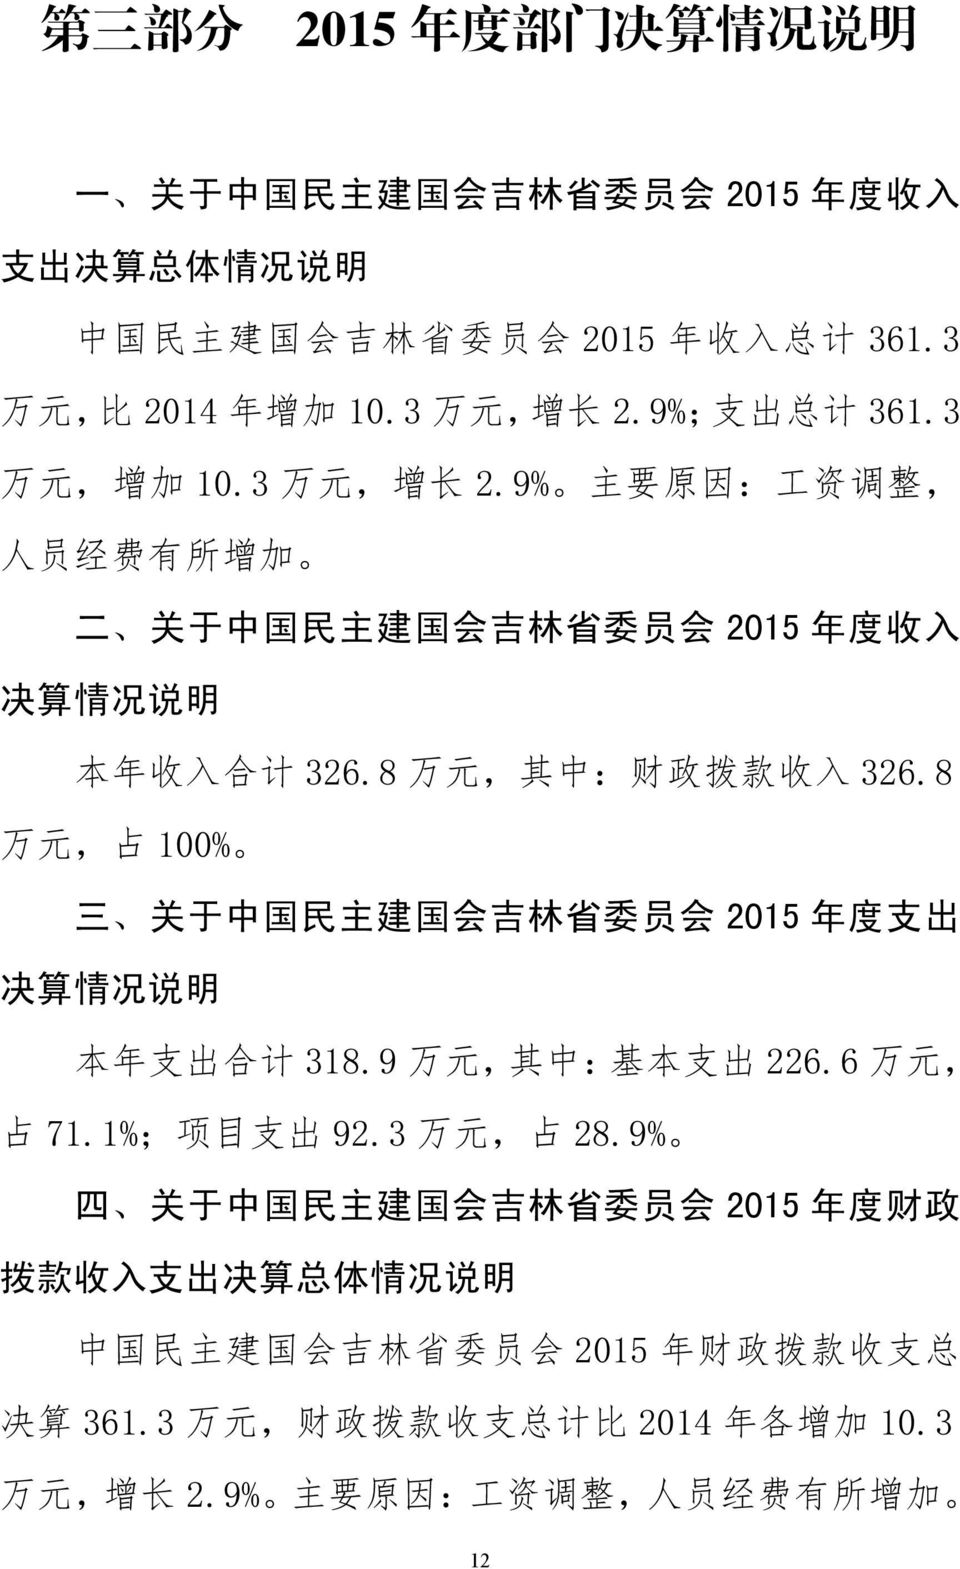 8 万 元, 占 100% 三 关 于 中 国 民 主 建 国 会 吉 林 省 委 员 会 2015 年 度 支 出 决 算 情 况 说 明 本 年 支 出 合 计 318.9 万 元, 其 中 : 基 本 支 出 226.6 万 元, 占 71.1%; 项 目 支 出 92.3 万 元, 占 28.